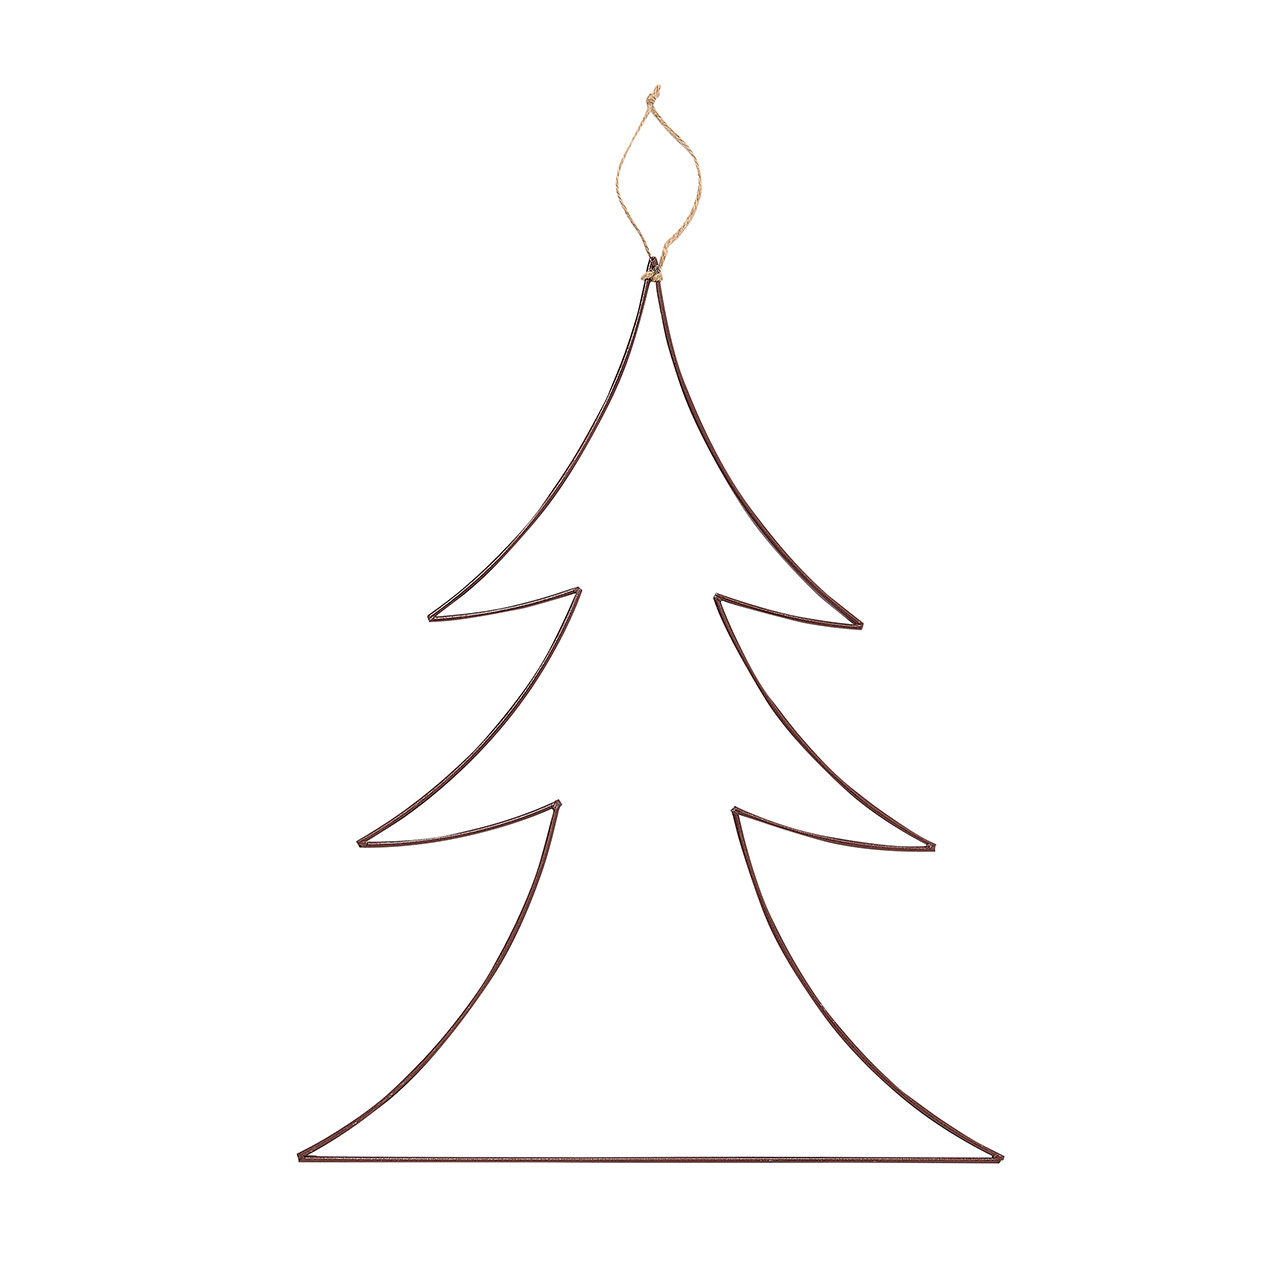 マイフラ 通販 ハンギングフラットツリー A クリスマスオーナメント デコレーション素材 Xu 長さ 約61 幅 約47cm デコレーション素材 全国にmagiq 花器 花資材などをお届けします